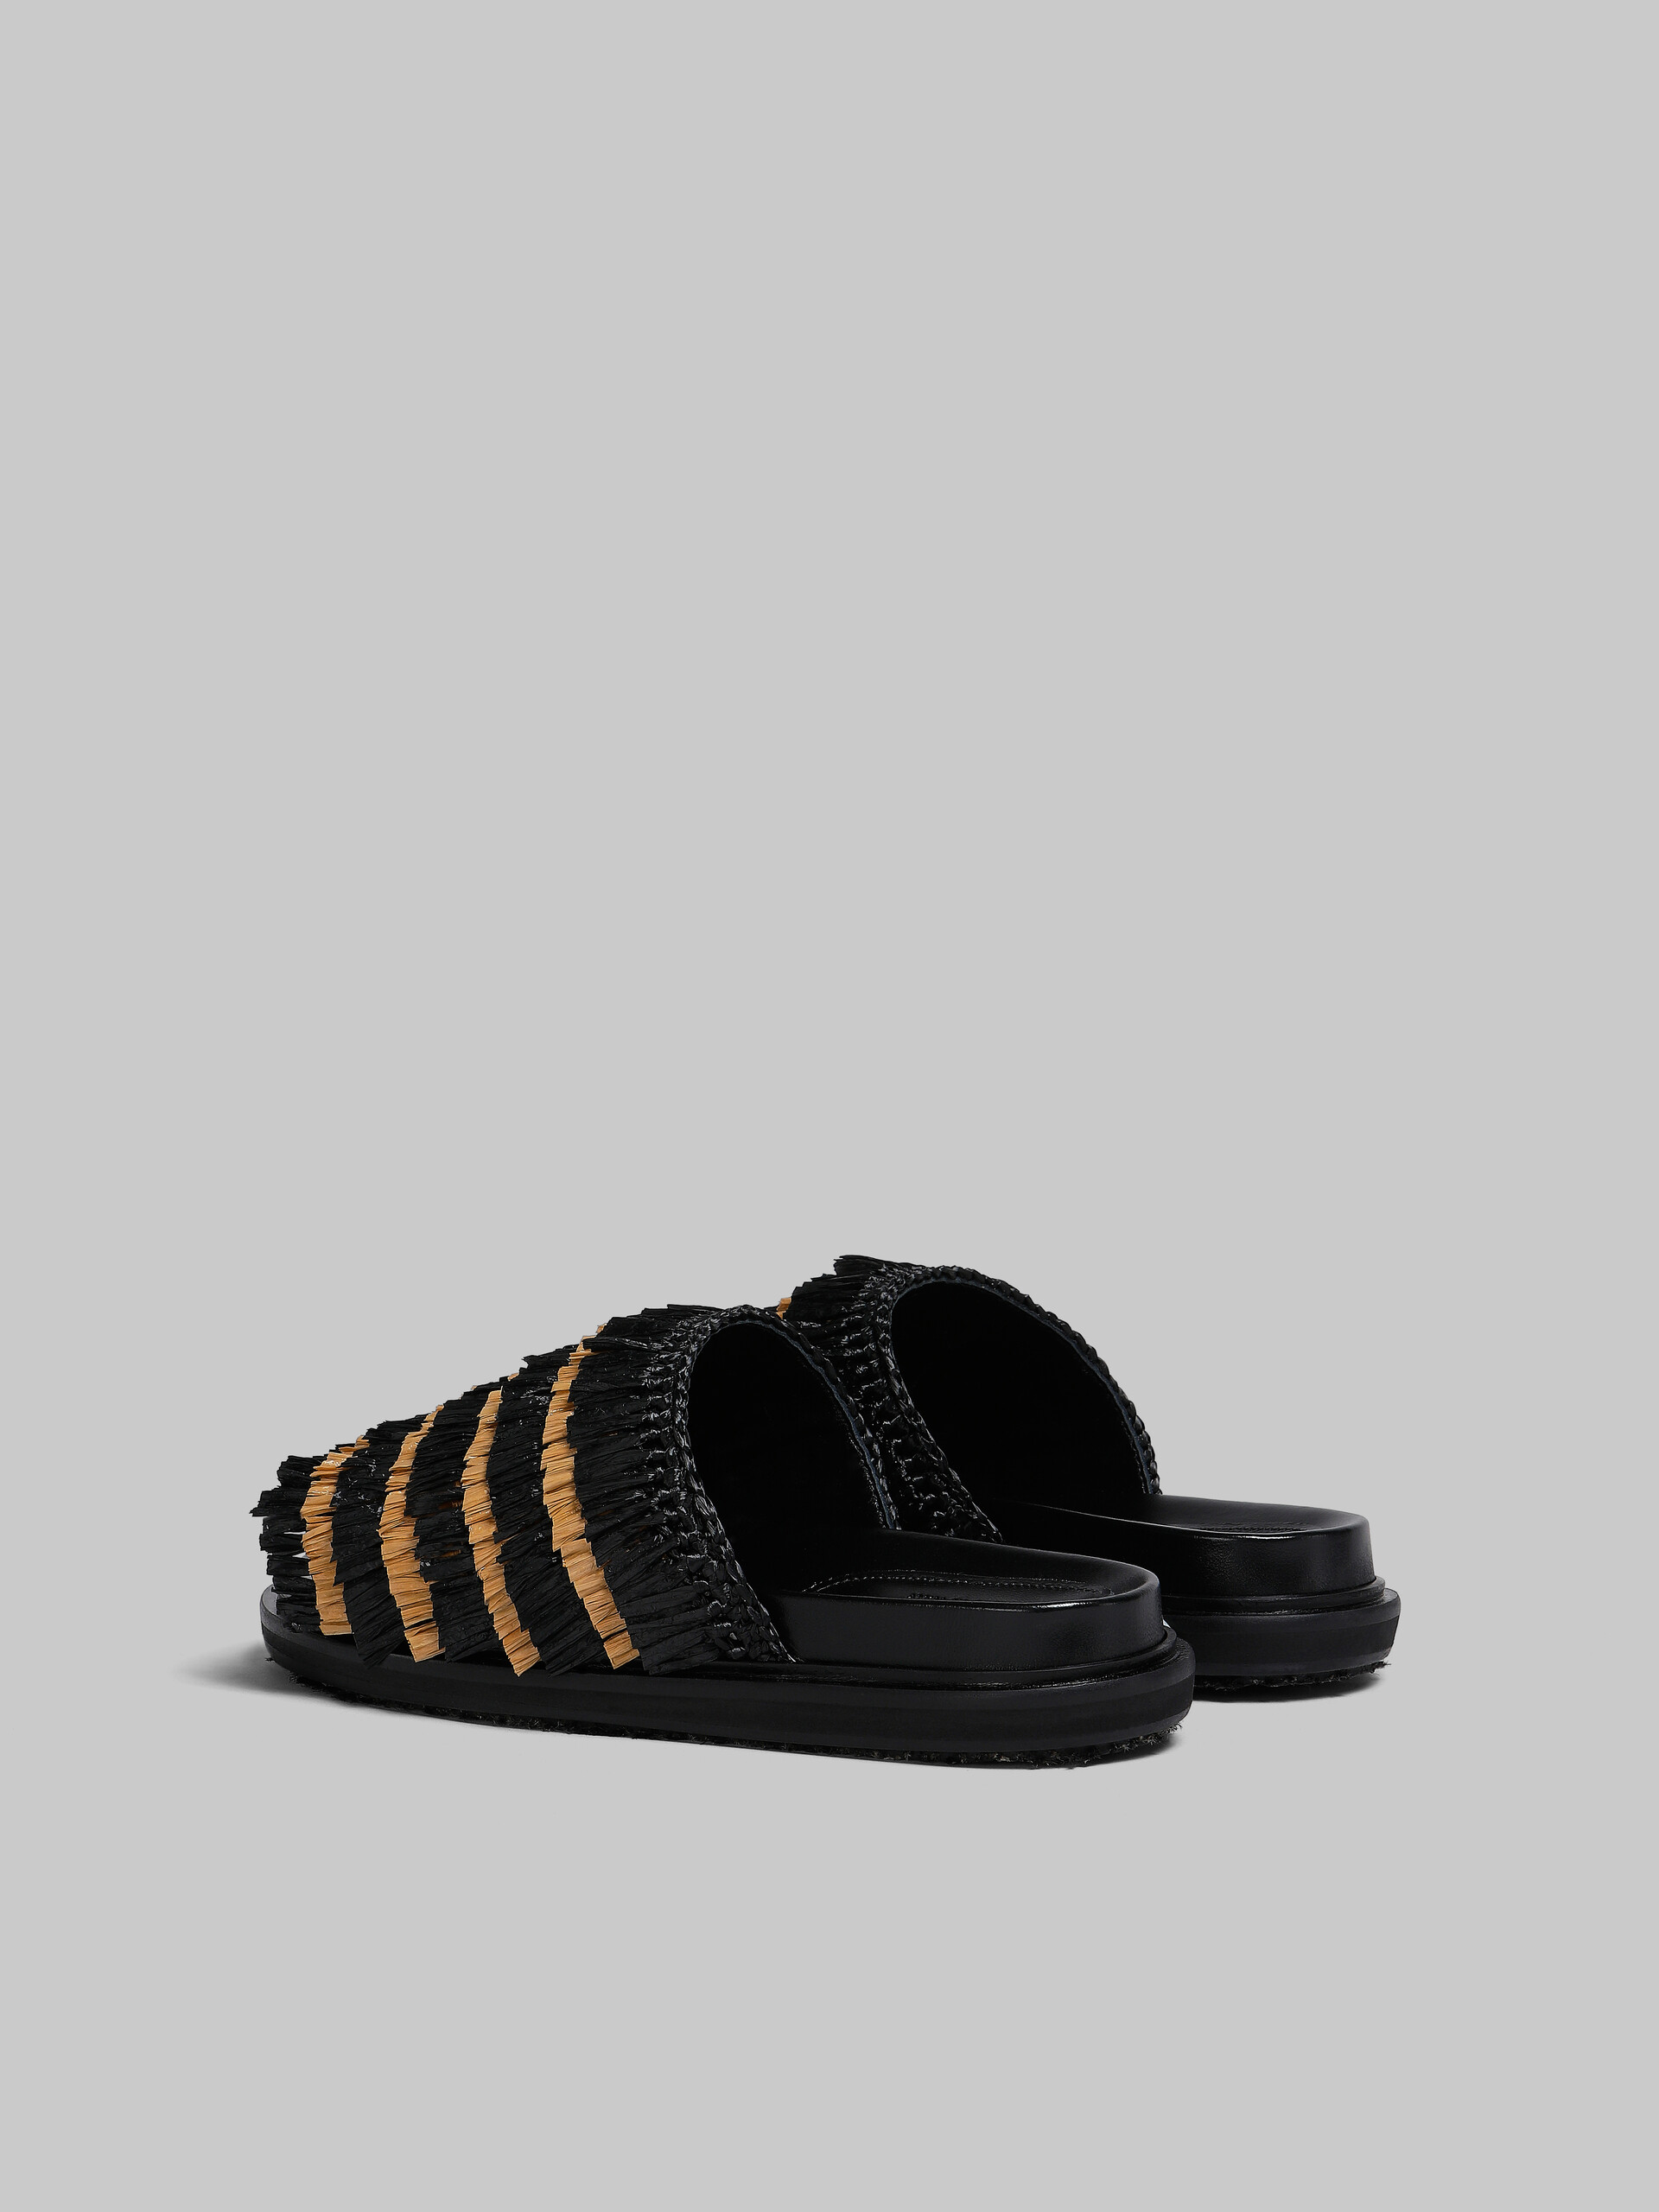 Black fringe slide sandal - Sandals - Image 3